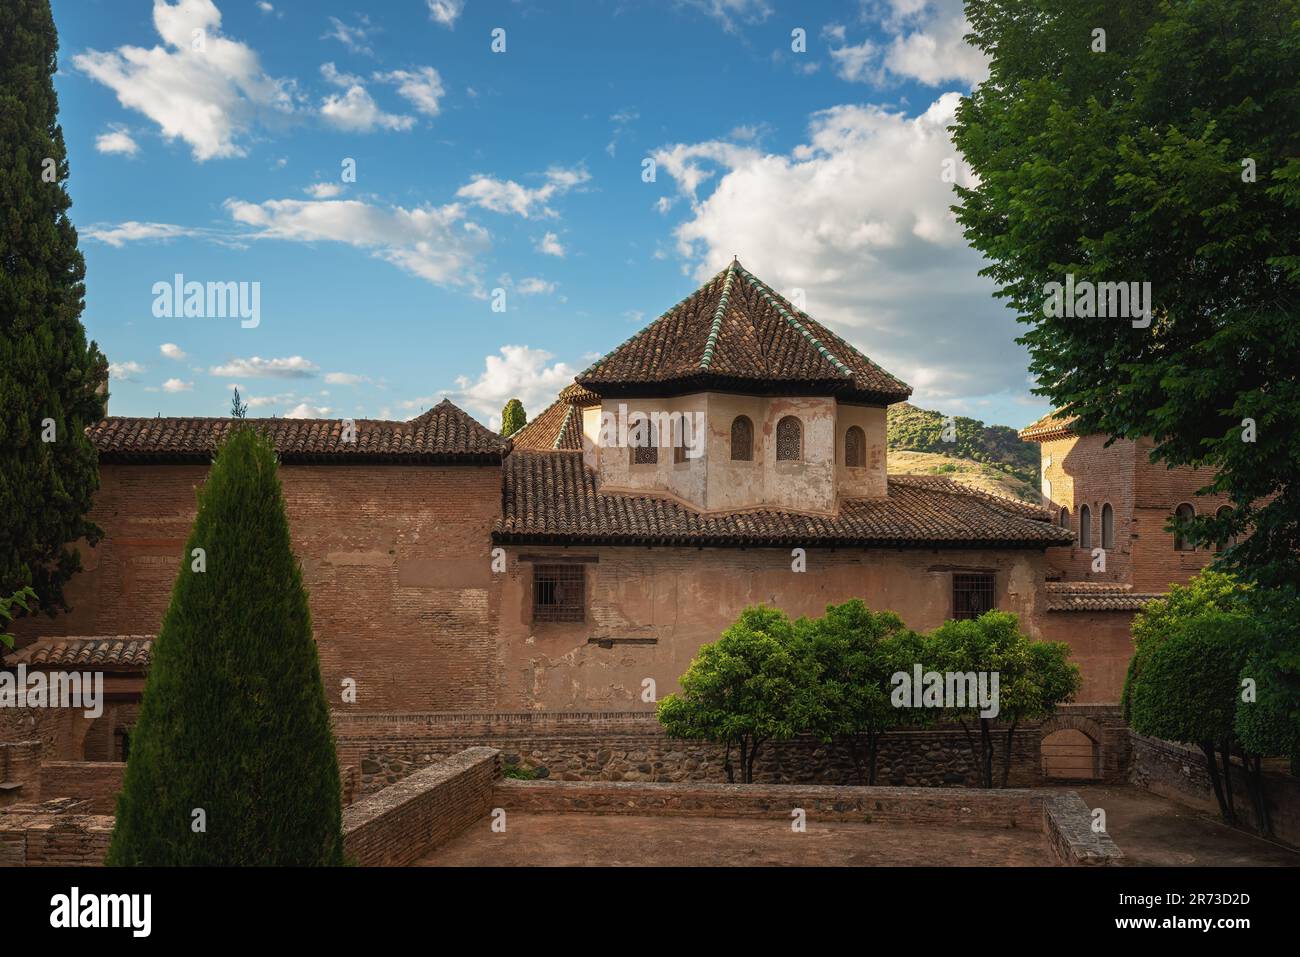 Turm der Abencerrajes in den Nasriden Palästen der Alhambra - Granada, Andalusien, Spanien Stockfoto